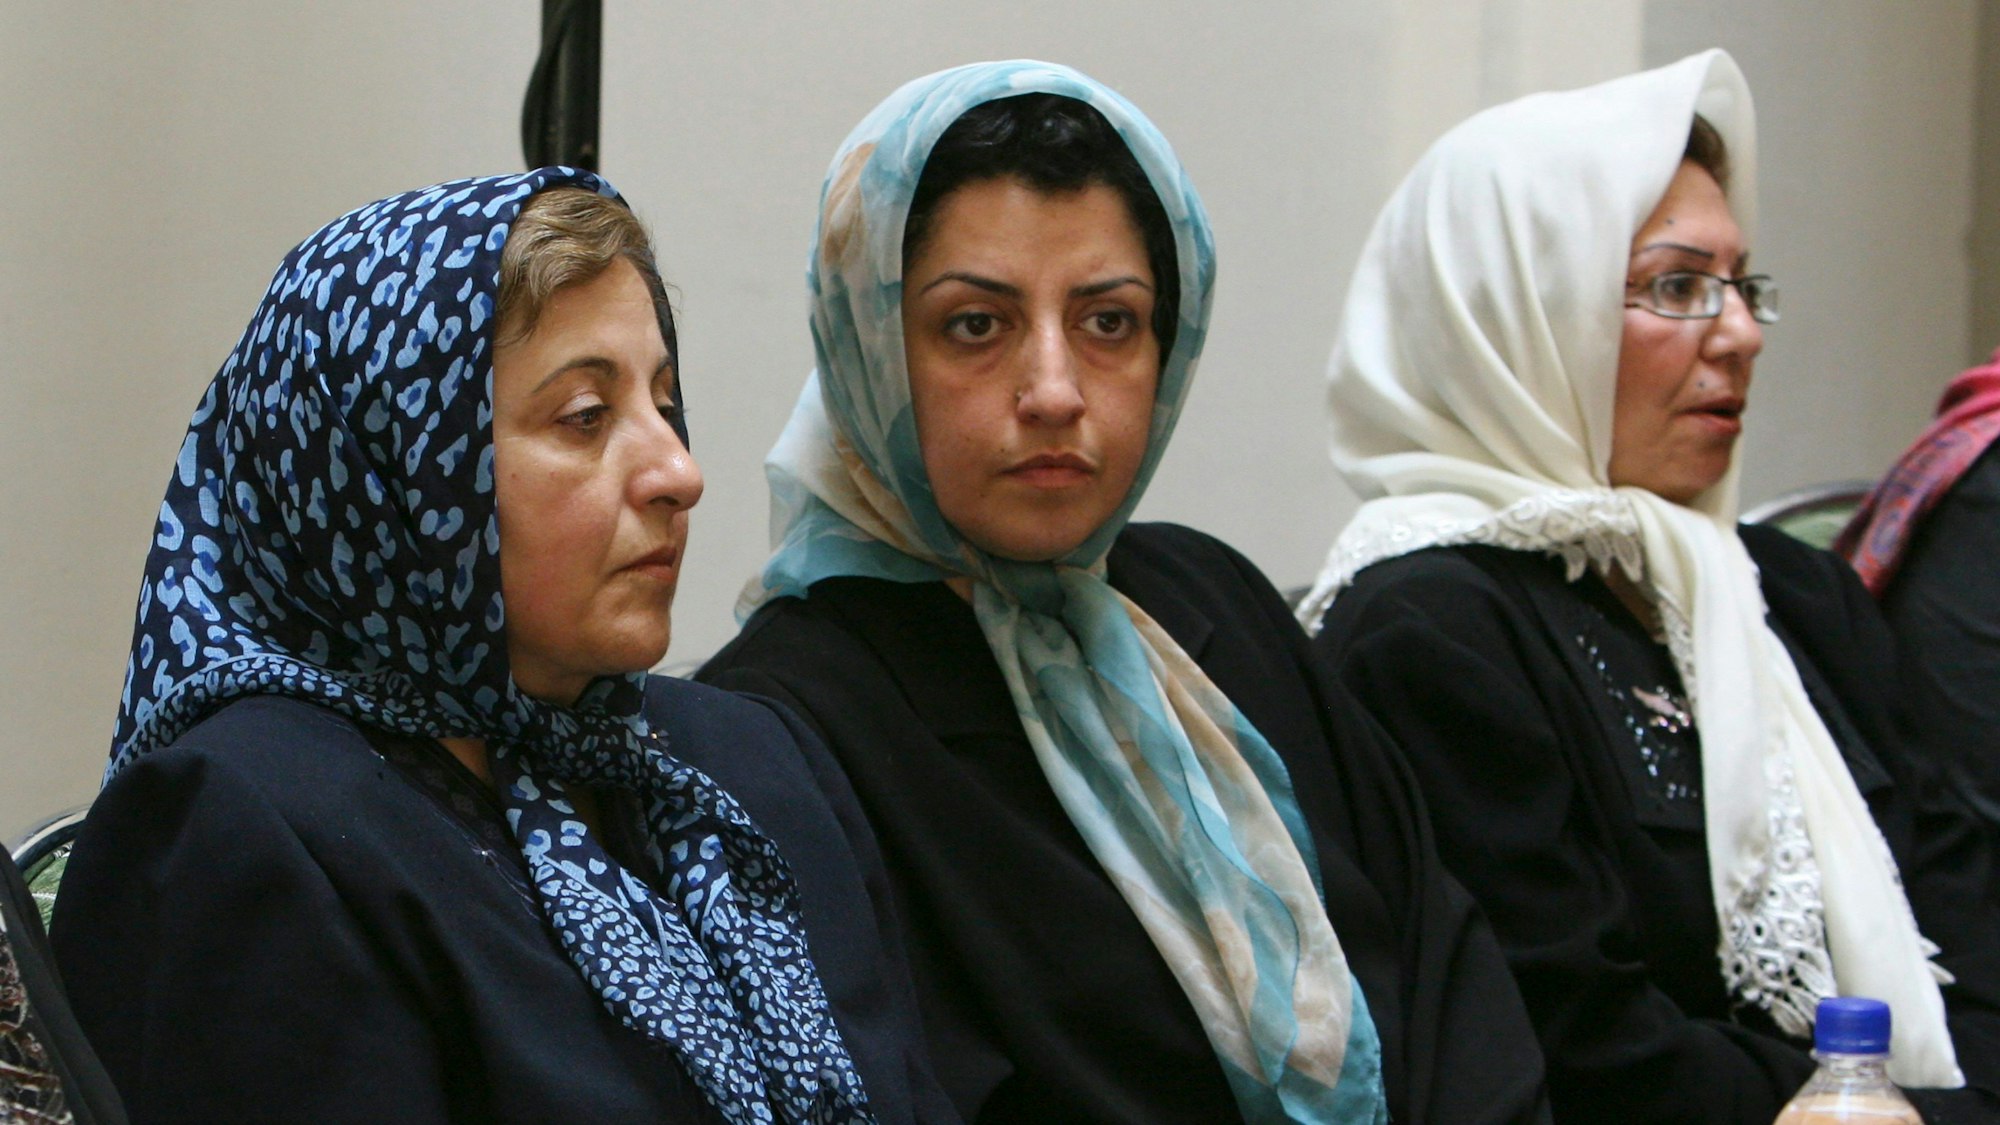 Die iranische Menschenrechtsaktivistin Narges Mohammadi (m.) sitzt neben der iranischen Friedensnobelpreisträgerin Shirin Ebadi (2003, l.), während sie an einem Treffen über Frauenrechte in Teheran, Iran, am 27. August 2007 teilnimmt.